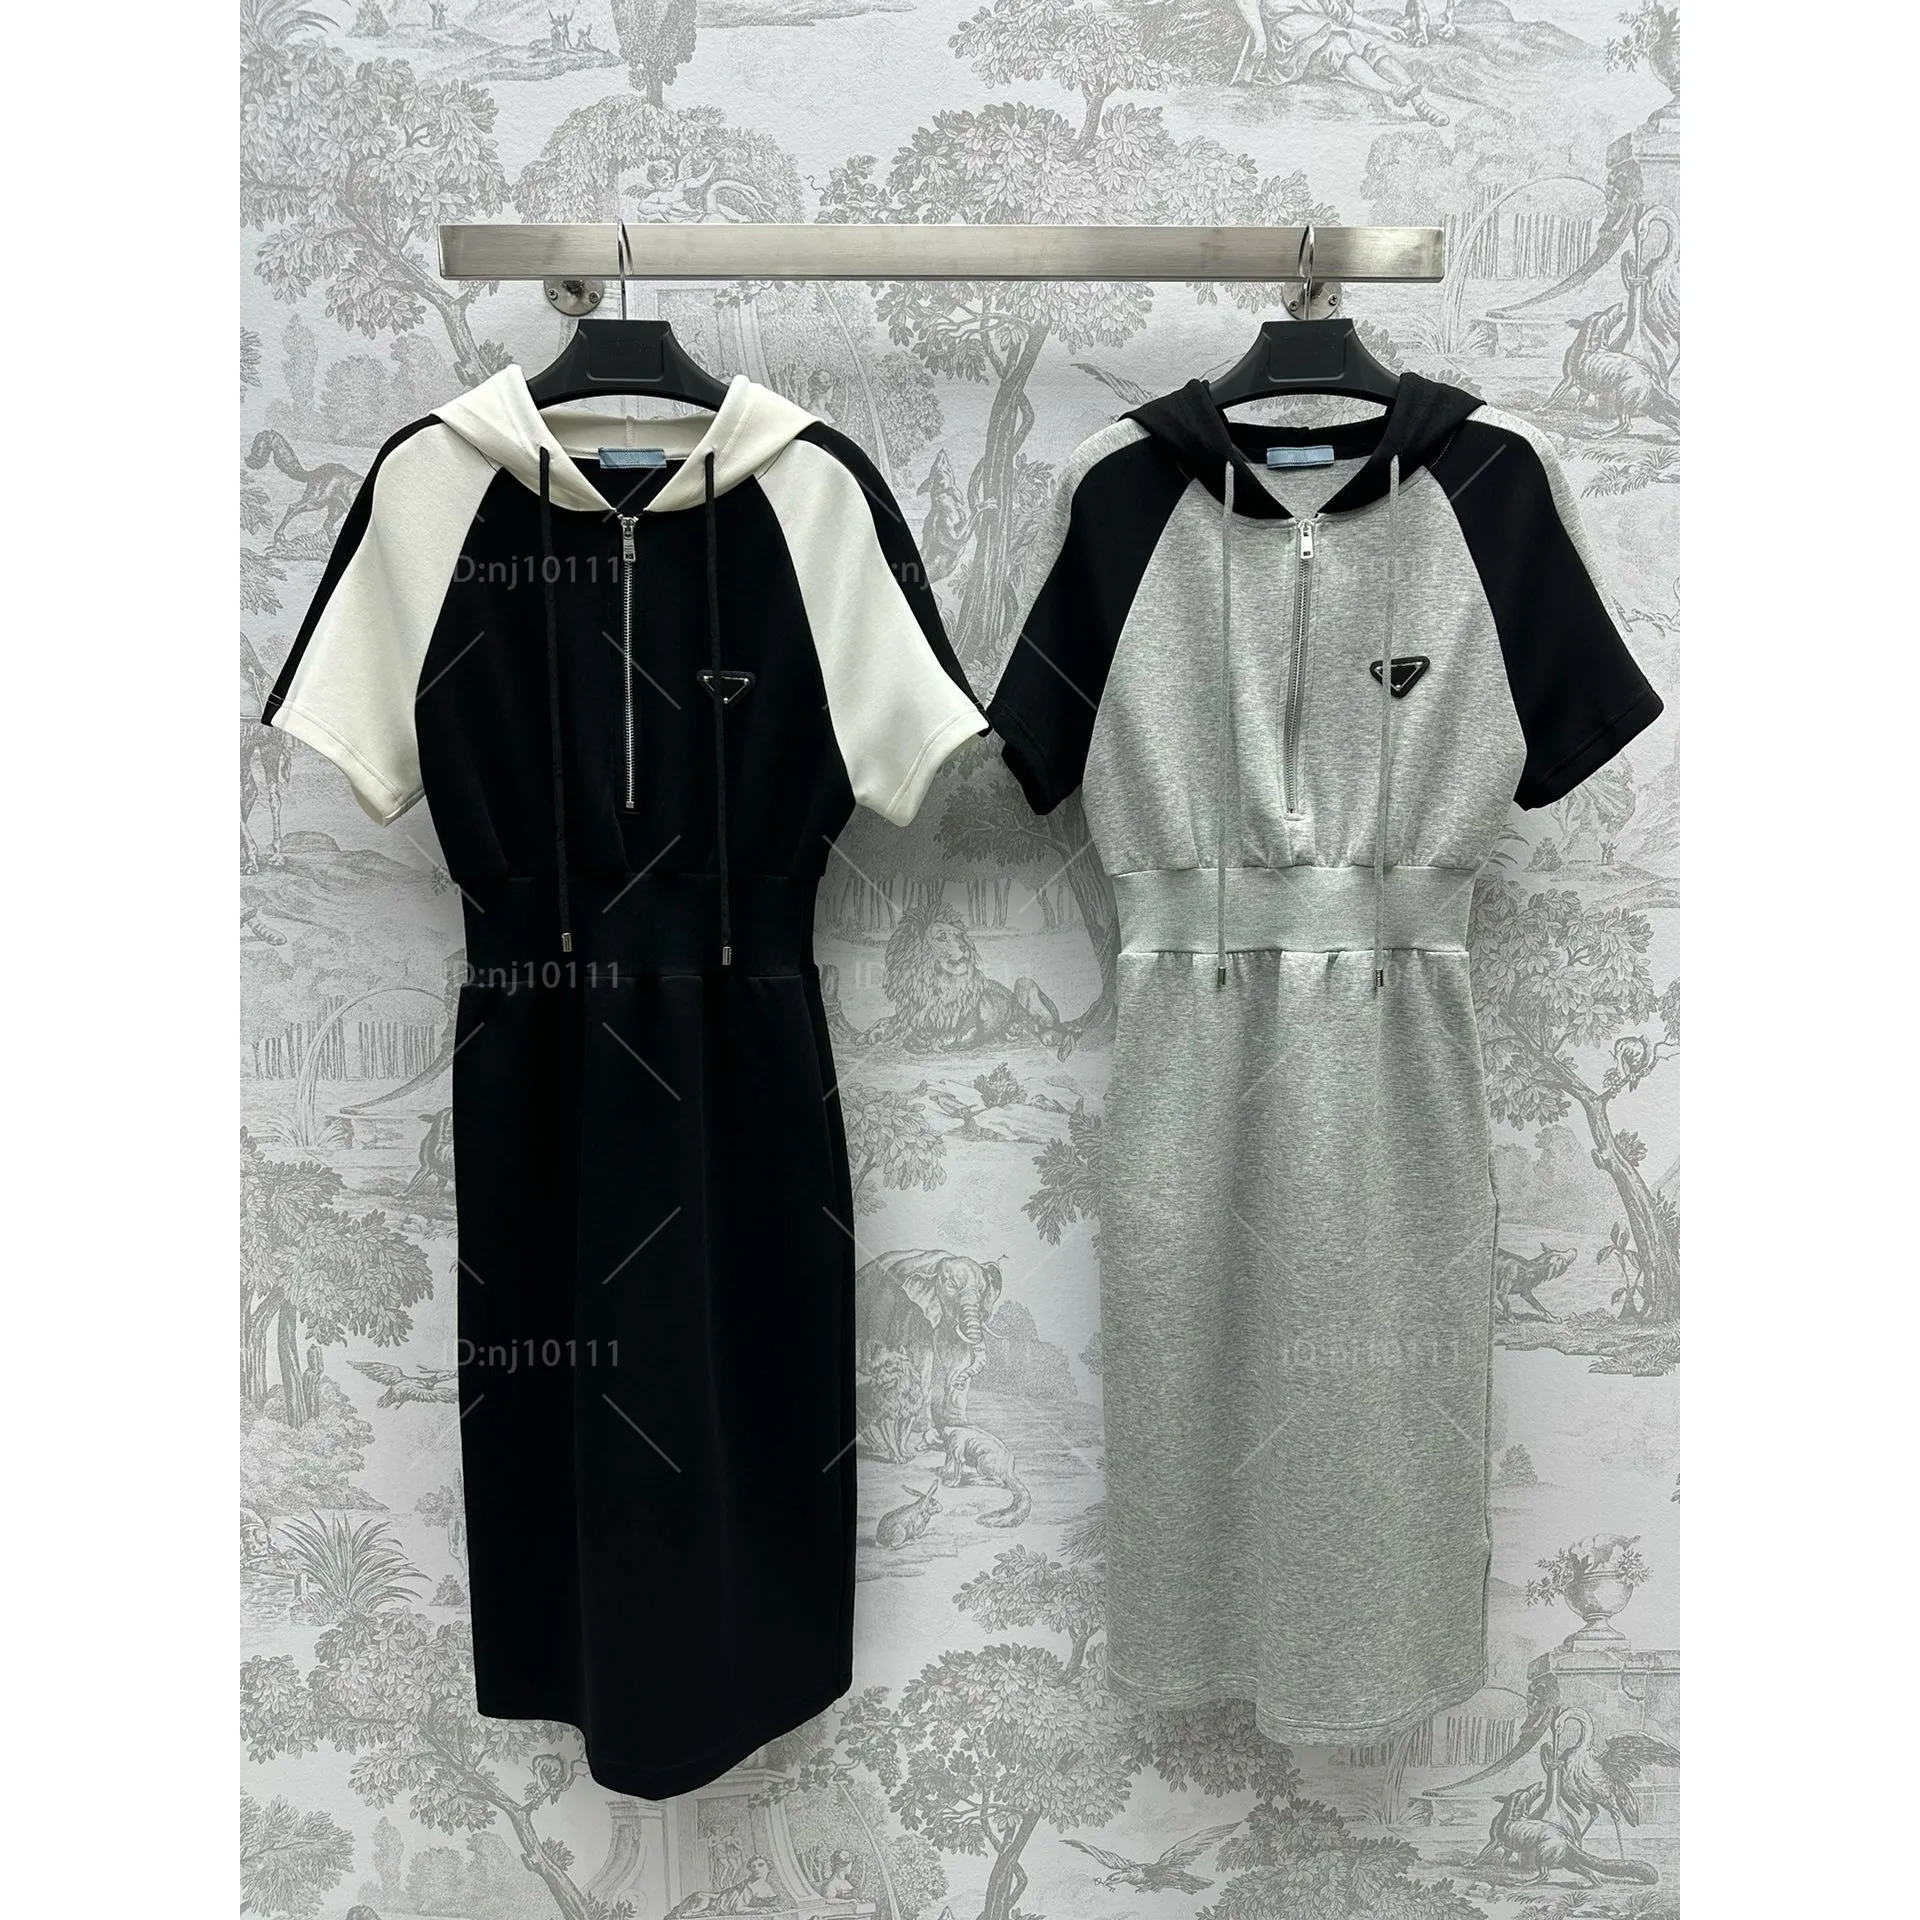 PL05 Kobiety sukienka kontrast raglan rękaw sznurka w talii A w kształcie litery a dzielony rąbek